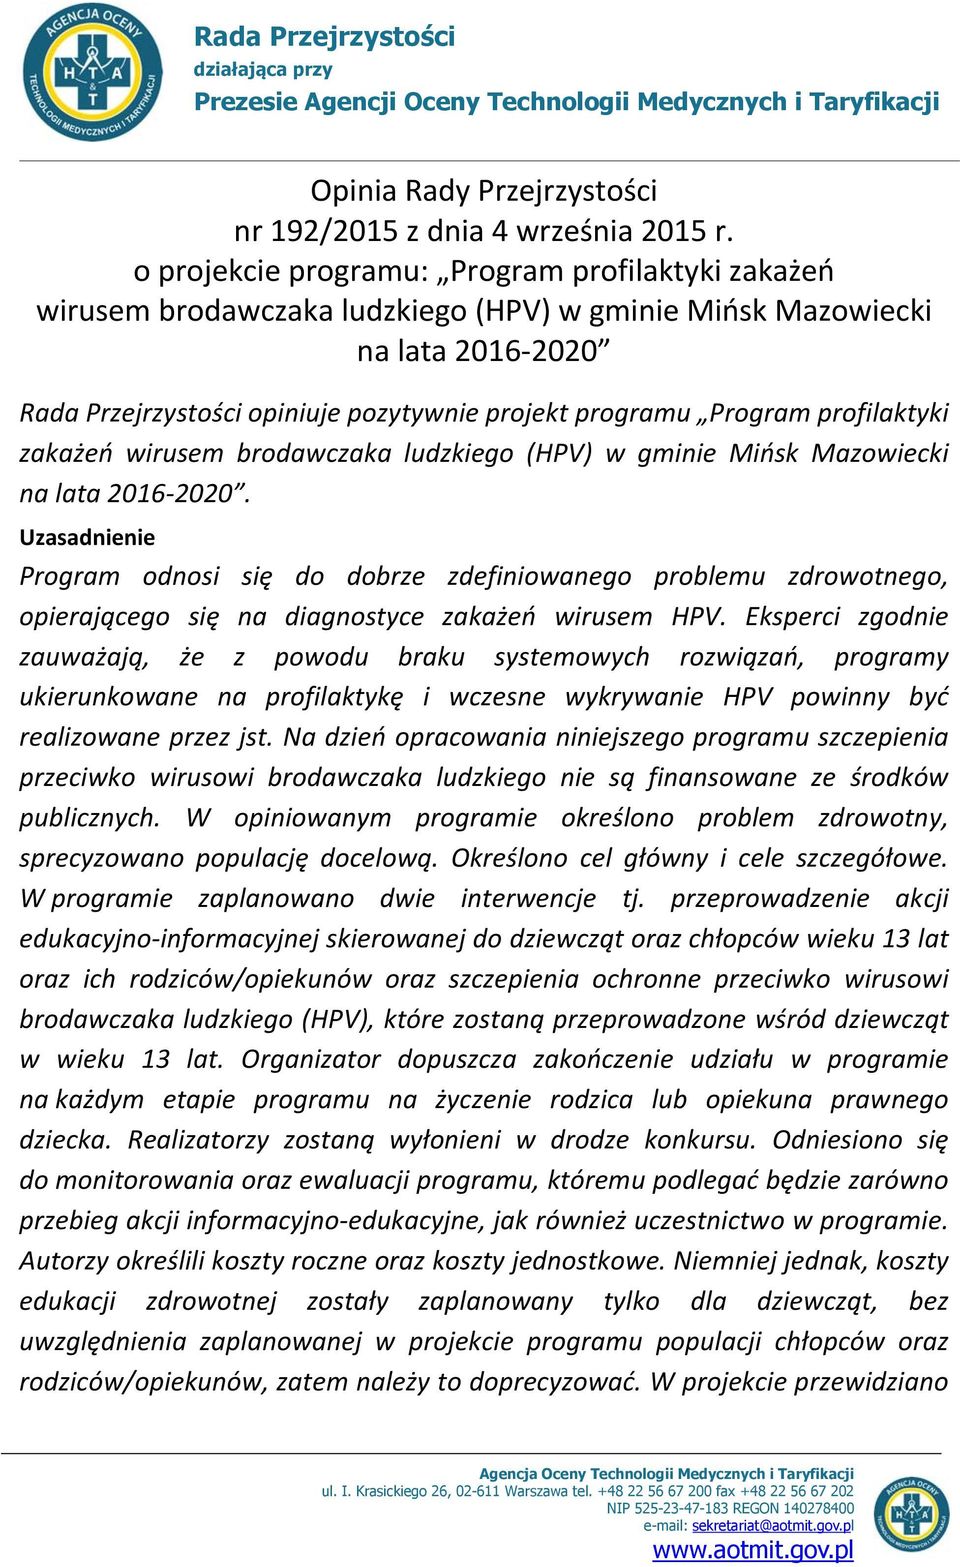 profilaktyki zakażeń wirusem brodawczaka ludzkiego (HPV) w gminie Mińsk Mazowiecki na lata 2016-2020.